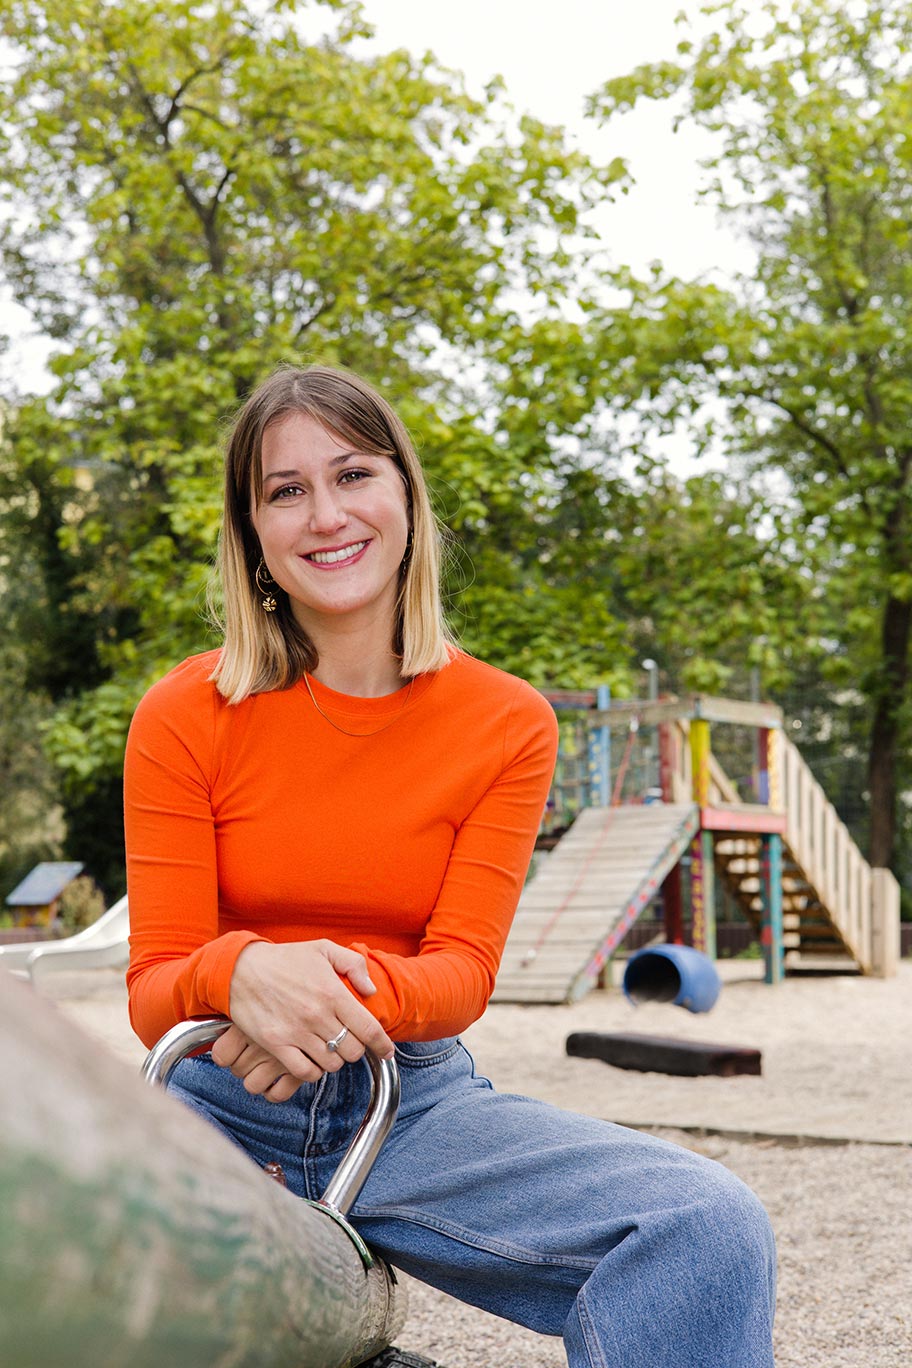 Eine Person mit schulterlangen blonden Haaren, orangenem Pullover und blauer Jeans sitzt auf einer Wippe an einem Kinderspielplatz und lächelt in die Kamera. 